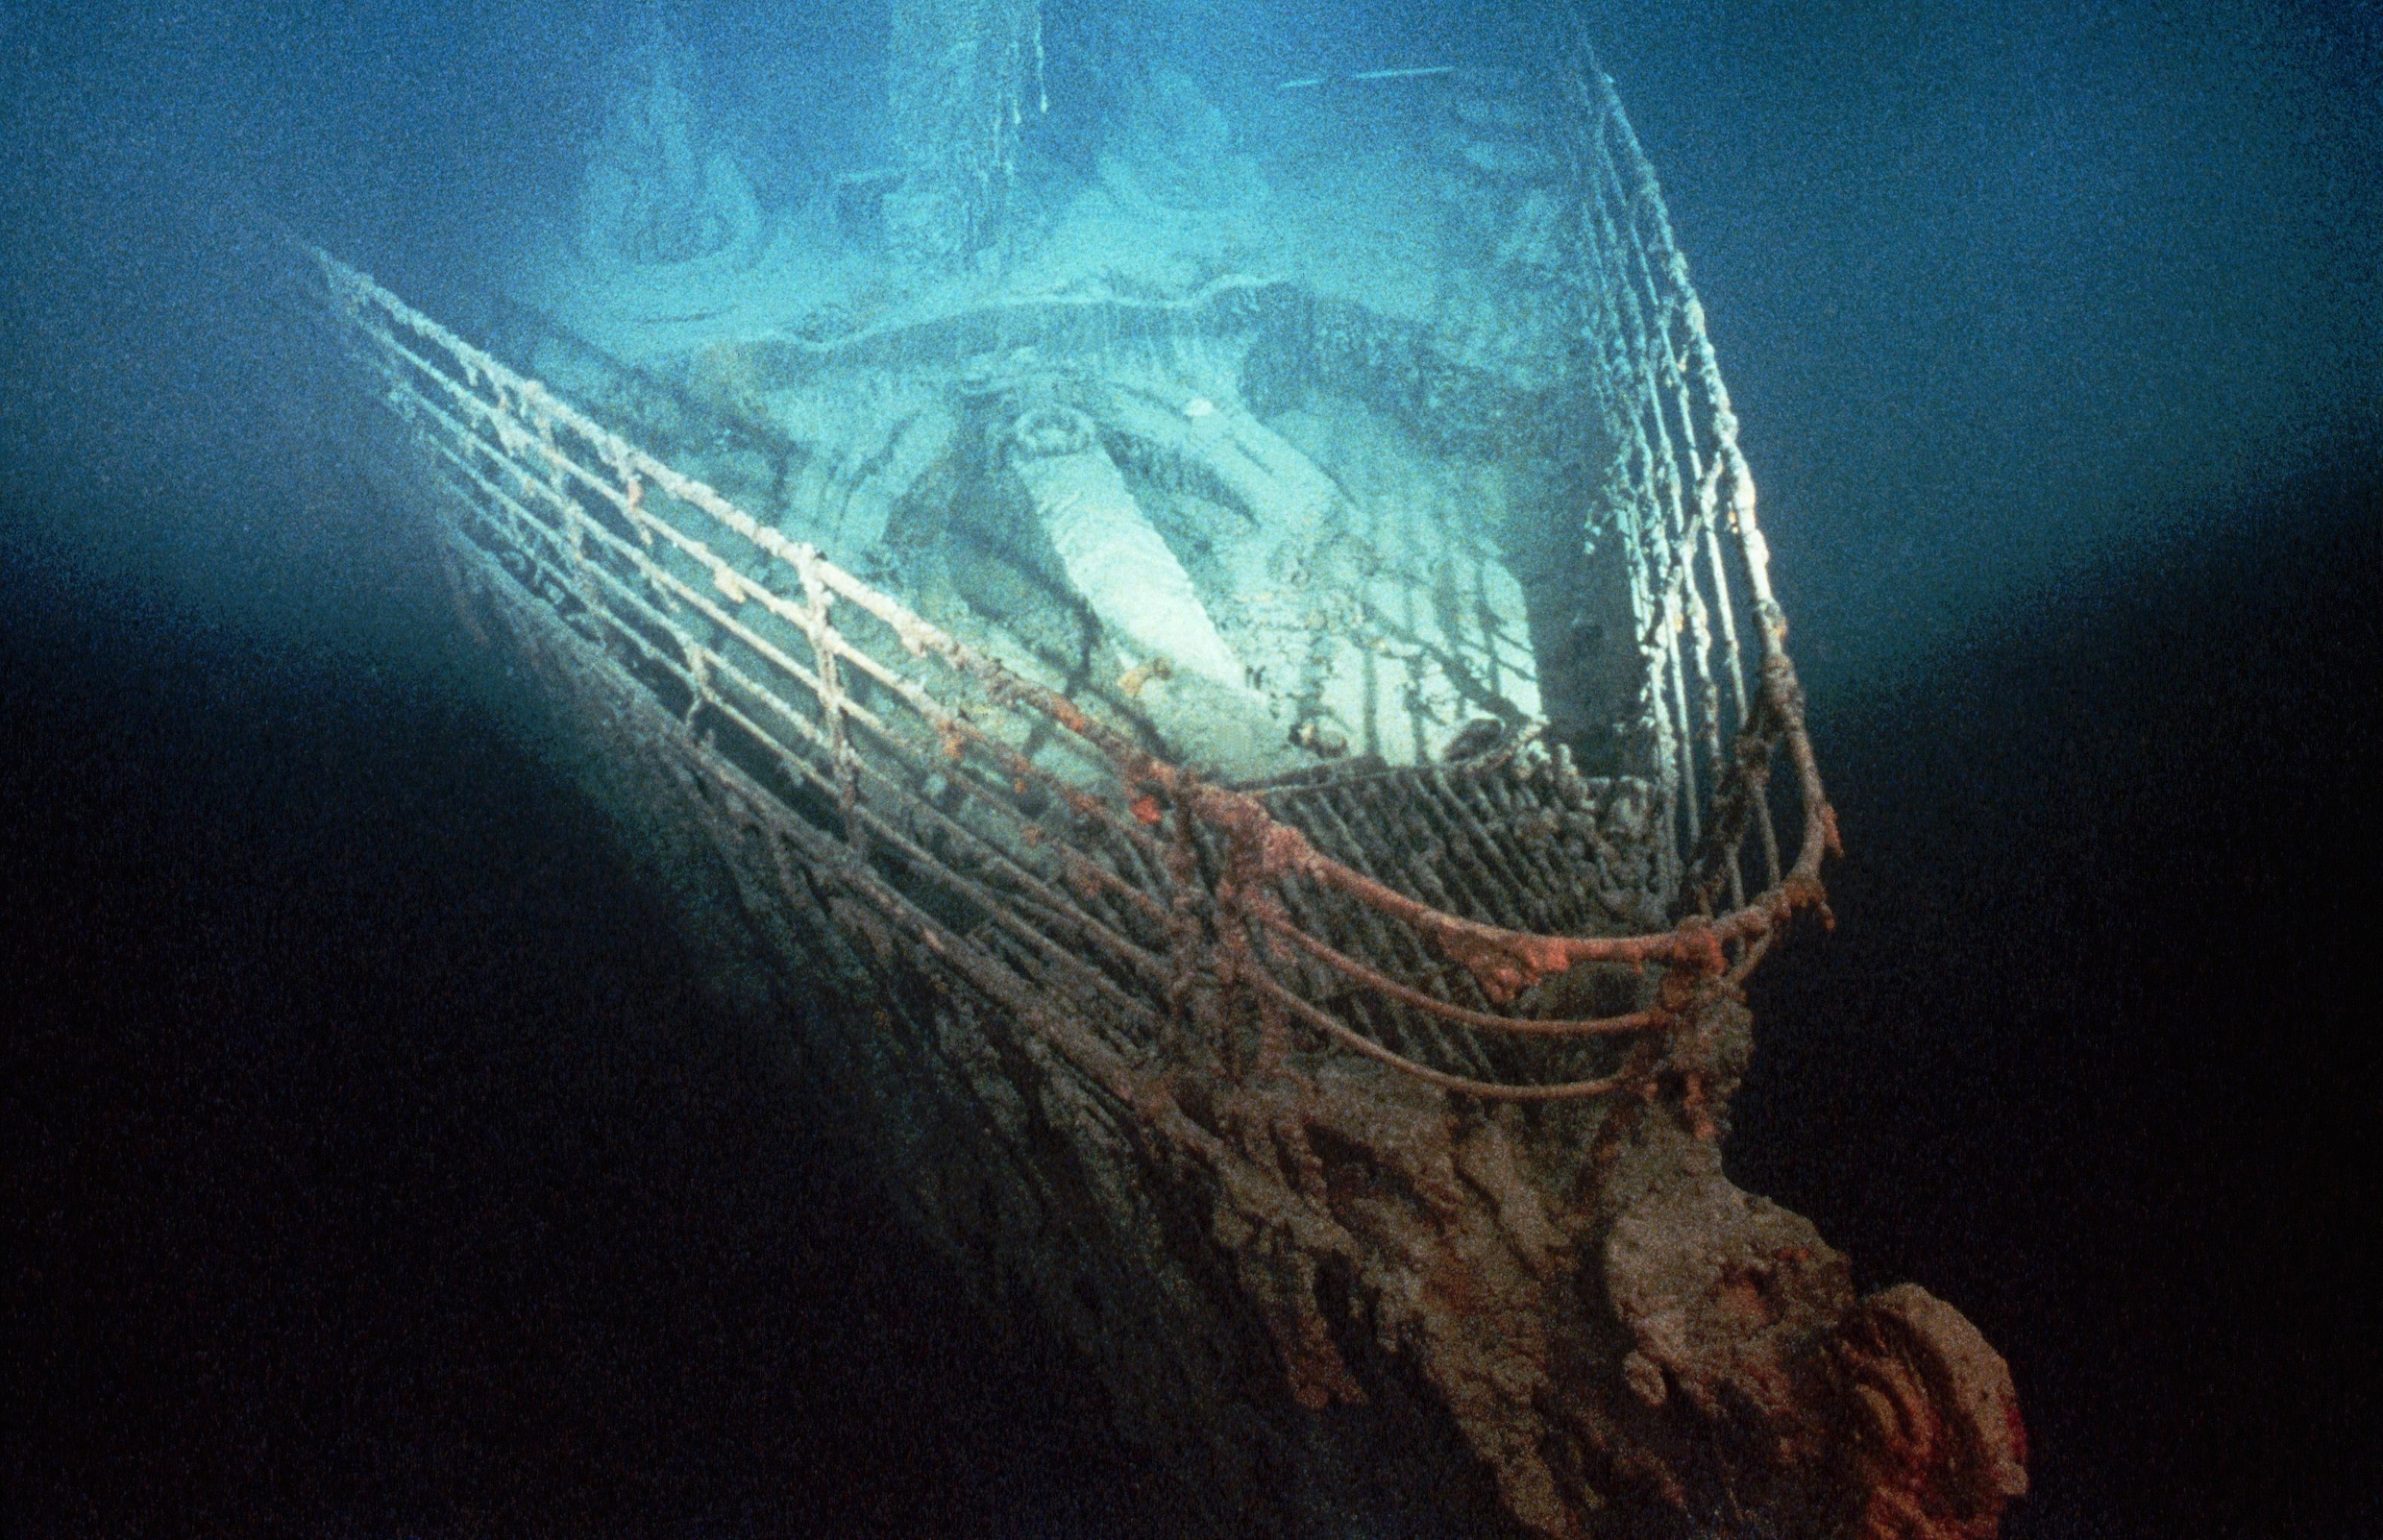 Kleine duikboot botst tegen wrak Titanic: ‘Het gebeurde per ongeluk’